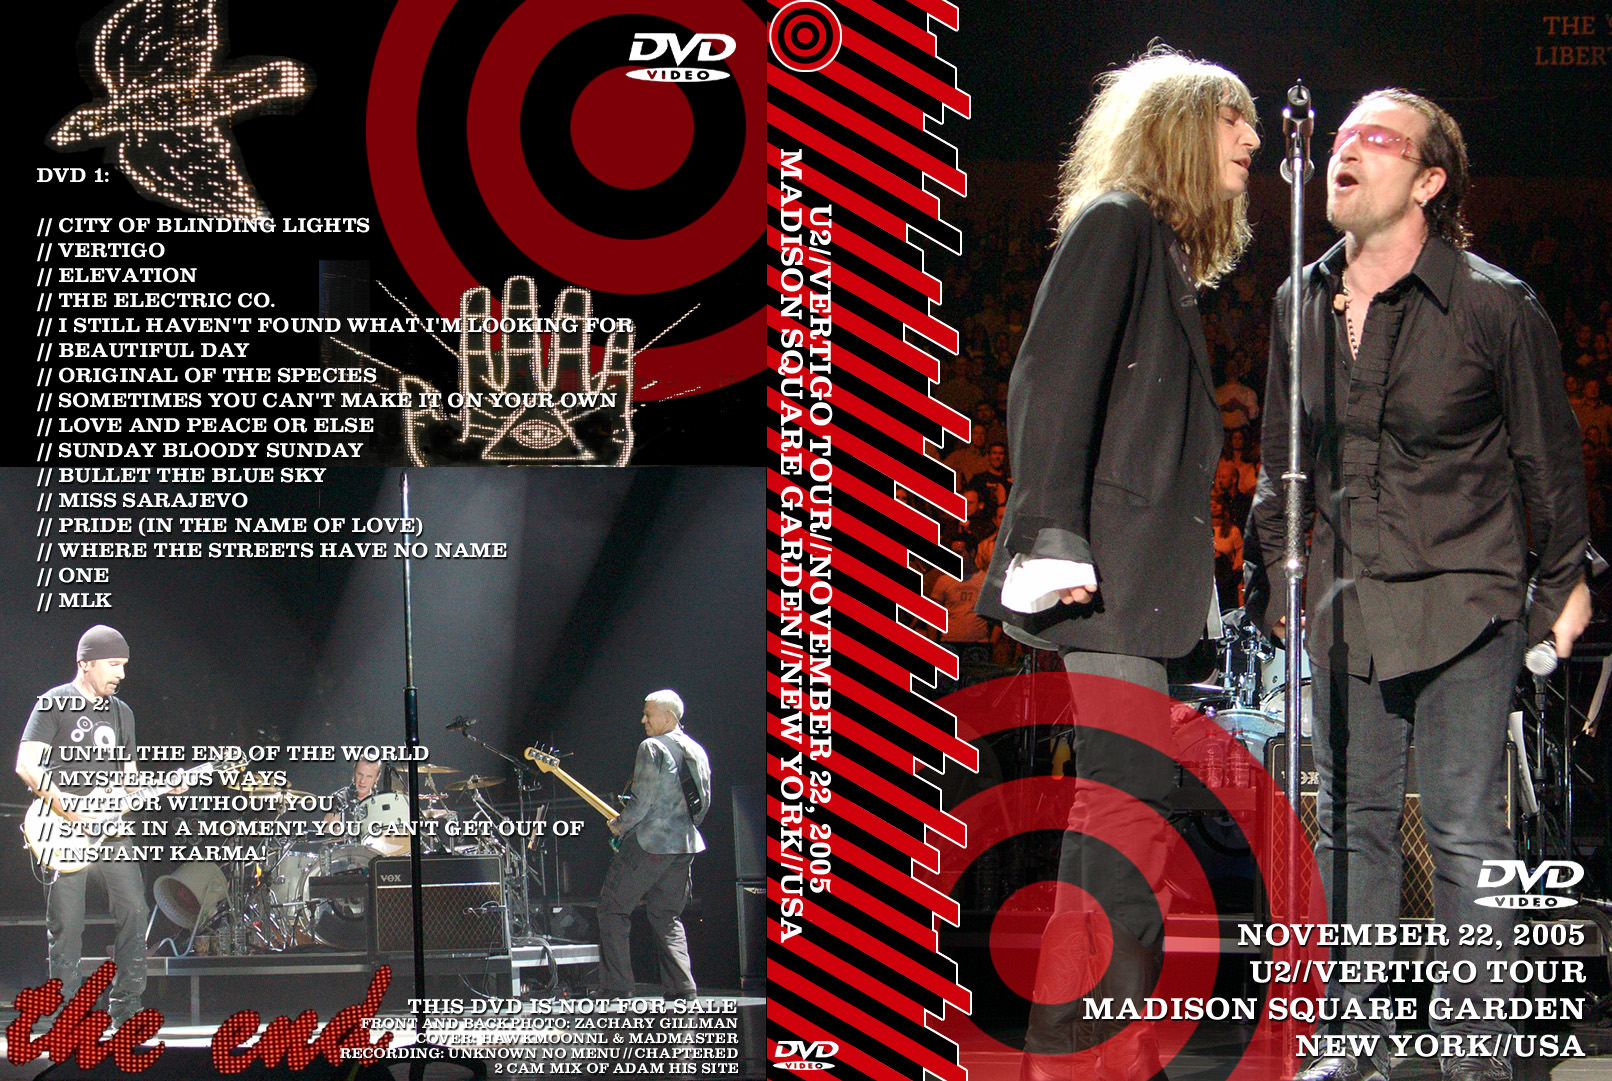 U2gigs cover » Video » DVD » 2004-2006 - Vertigo Tour » 06 - 2005 - 3rd Sex Image Hq